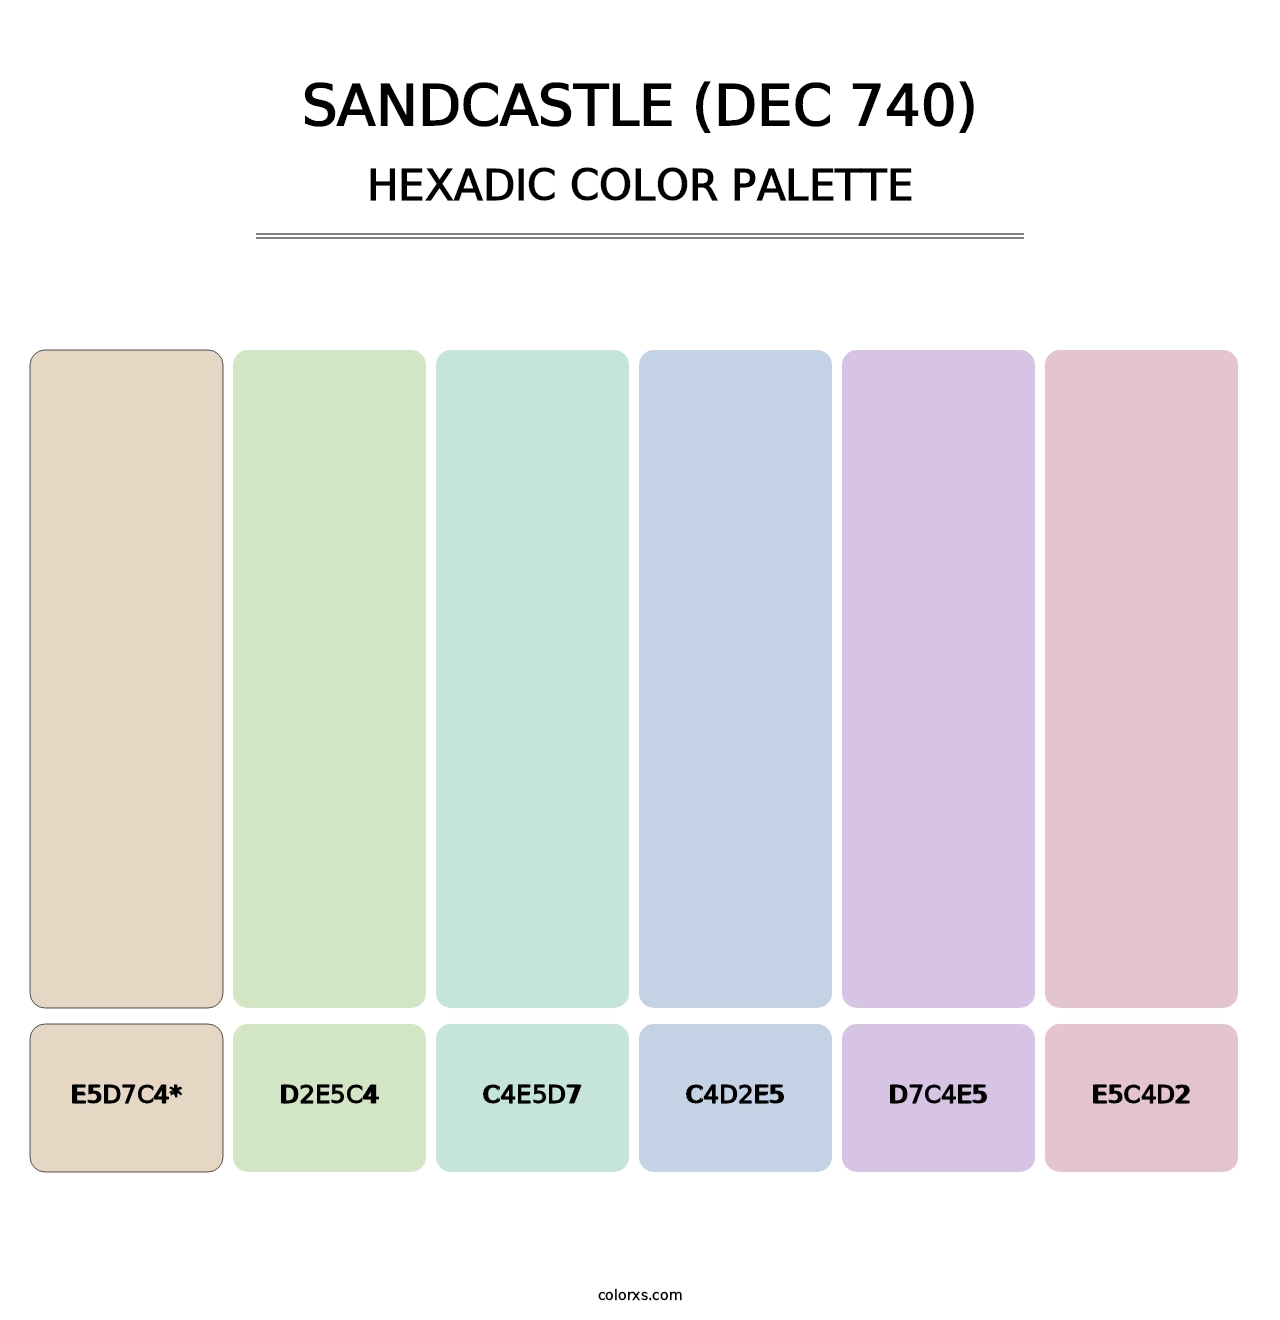 Sandcastle (DEC 740) - Hexadic Color Palette